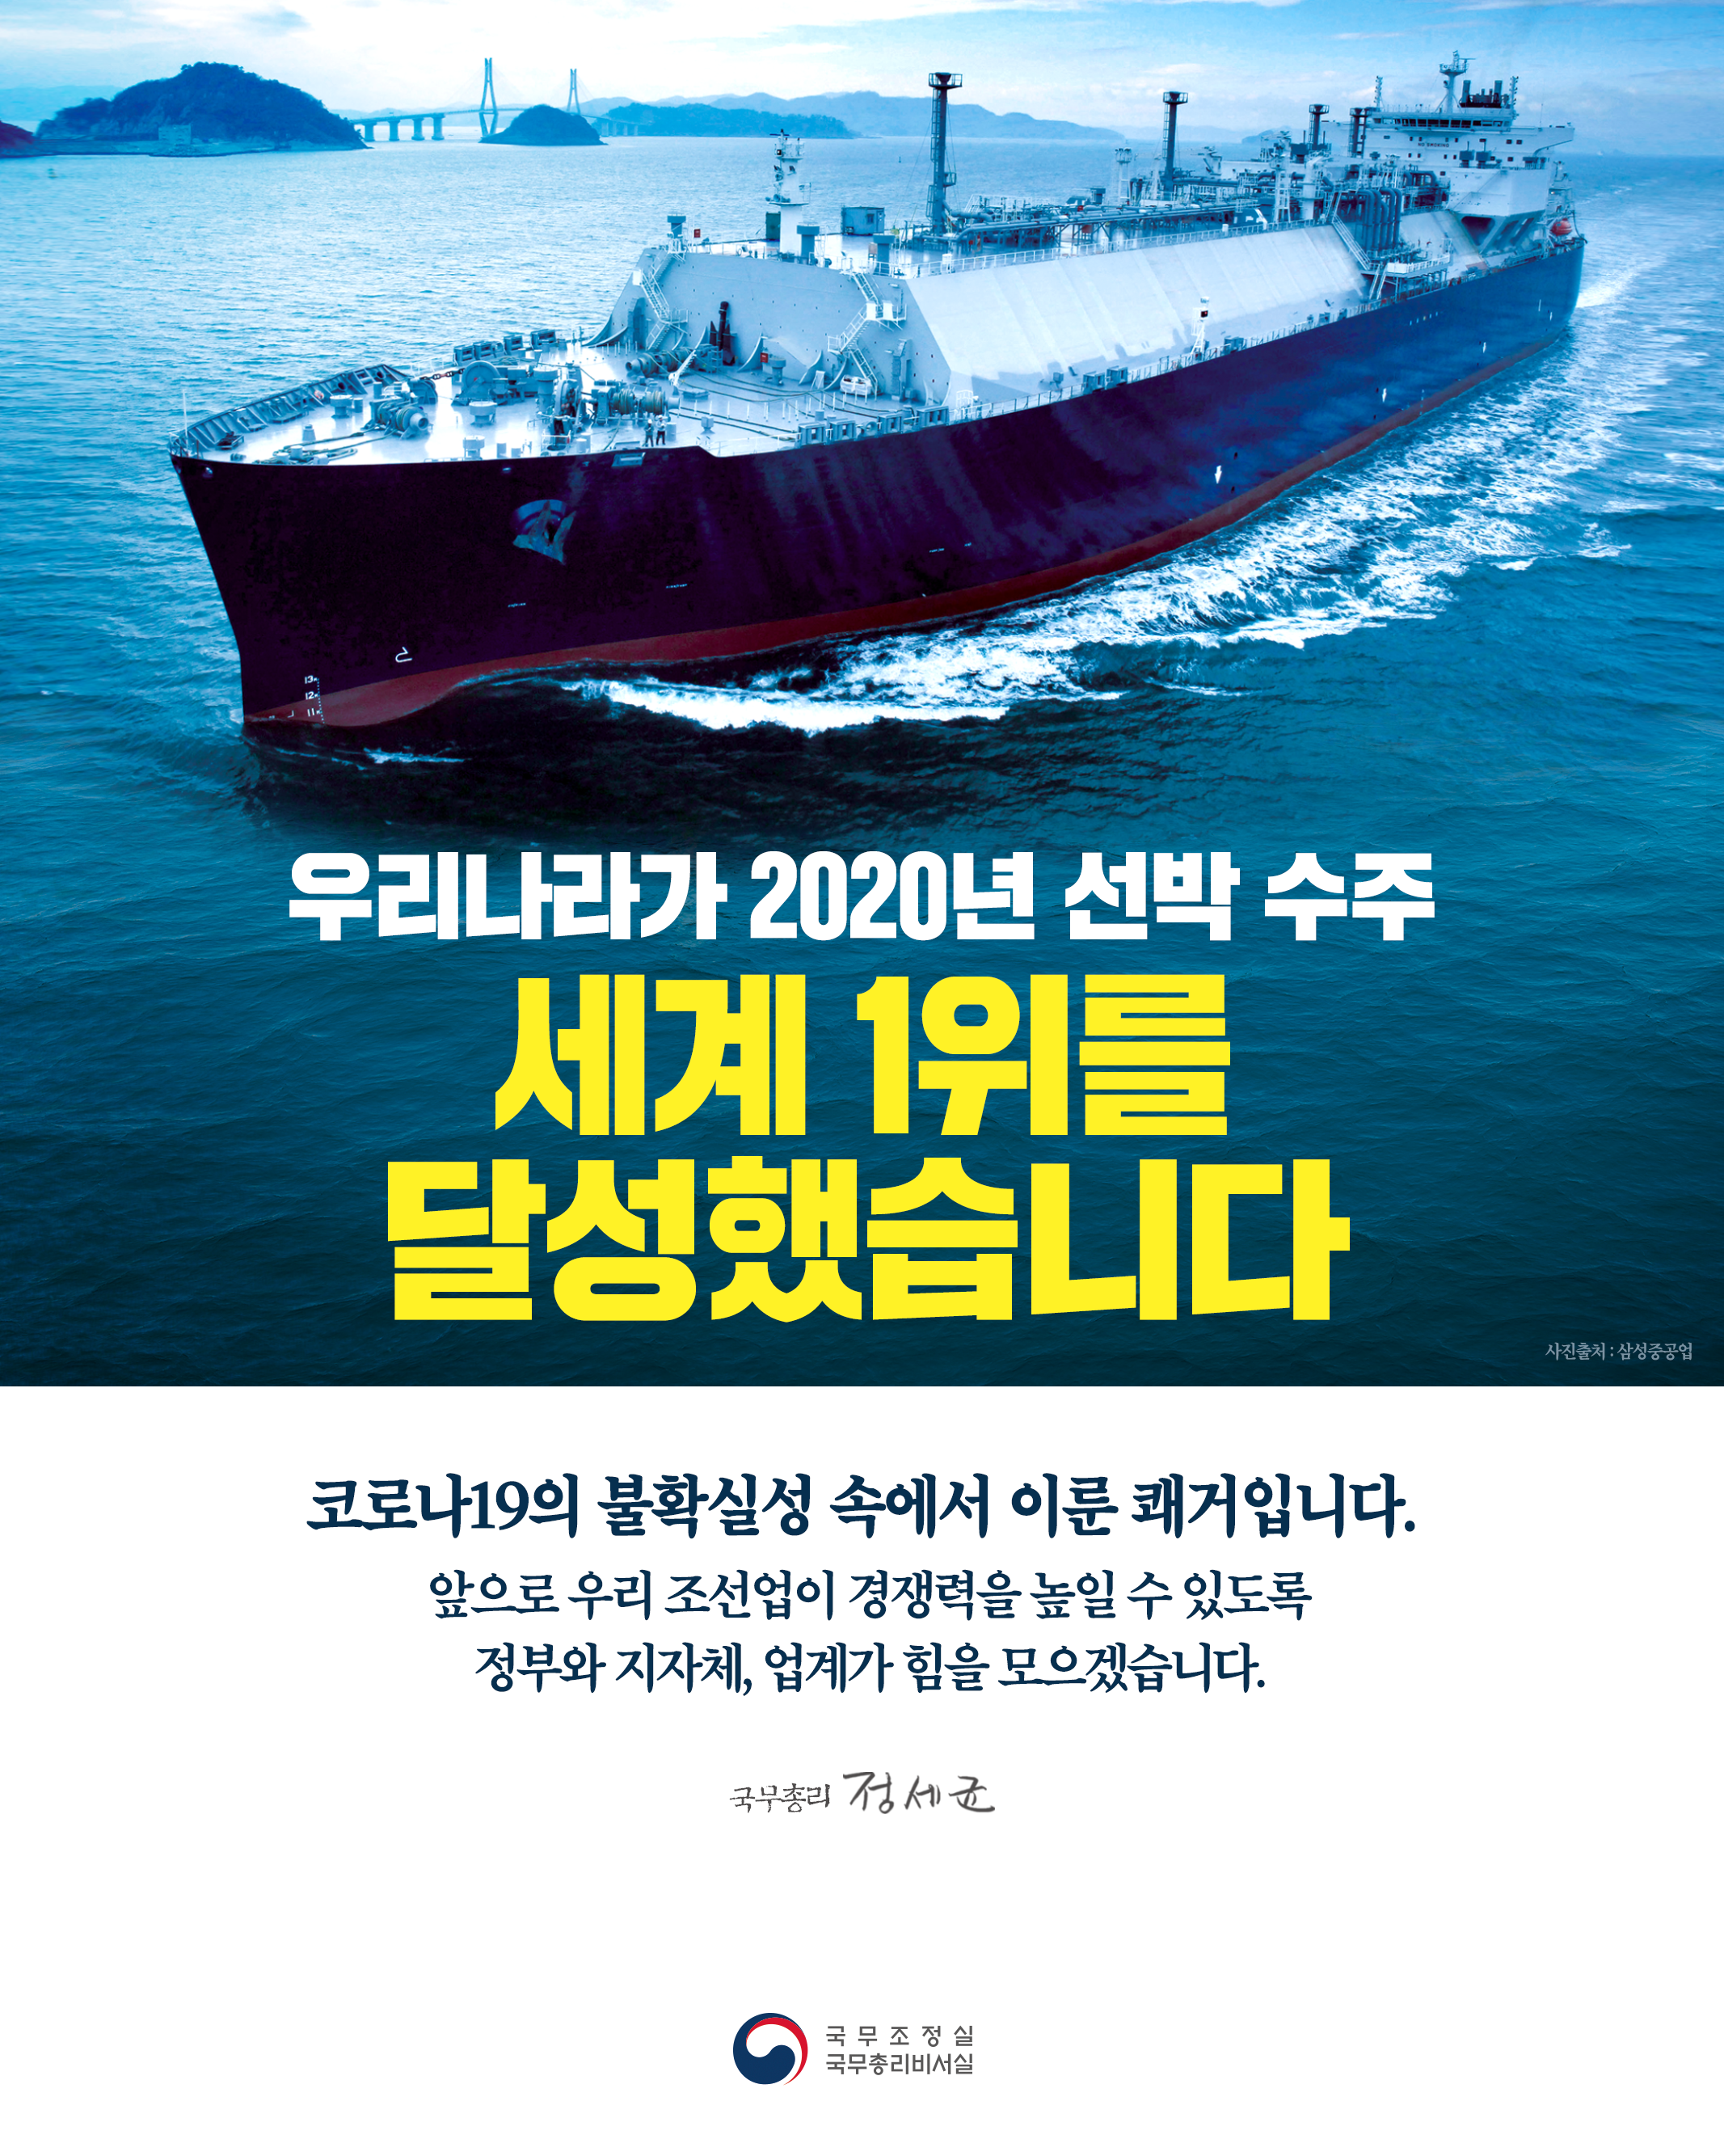 우리나라 2020년 선박 수주 세계 1위 달성